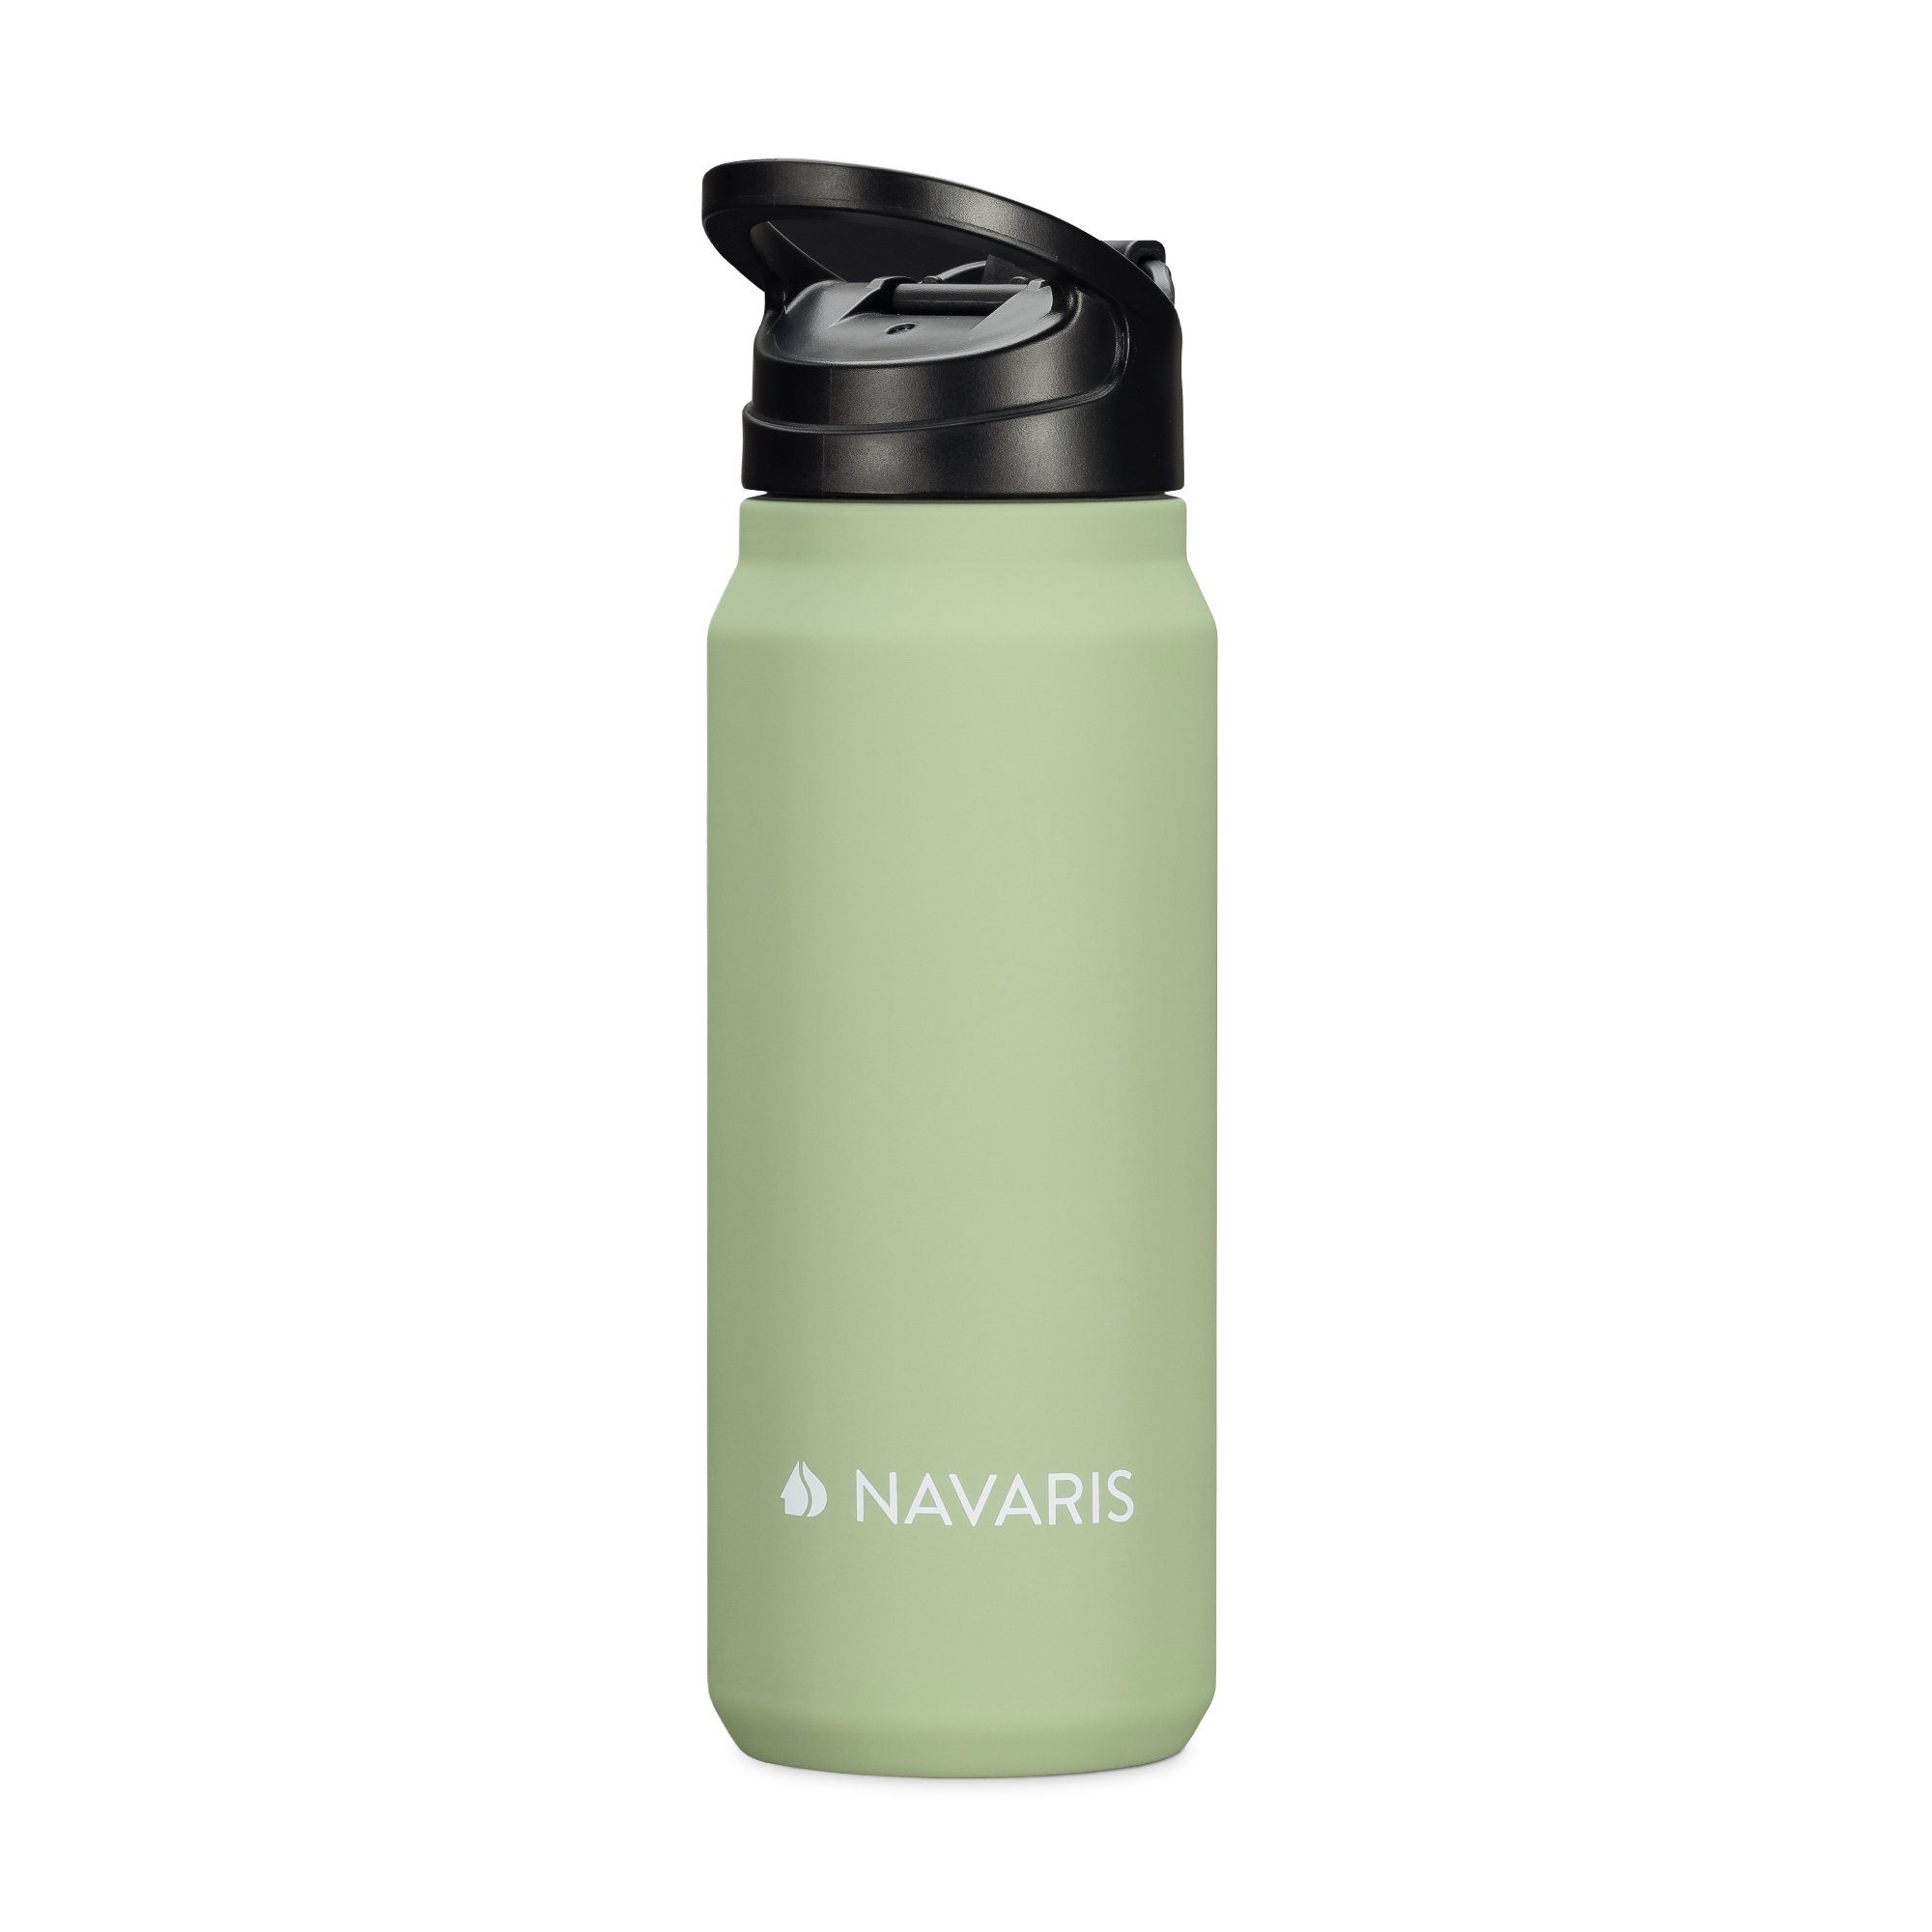 Navaris Trinkflasche 700ml Edelstahl Kunststoff und - aus Trinkflasche doppelwandig